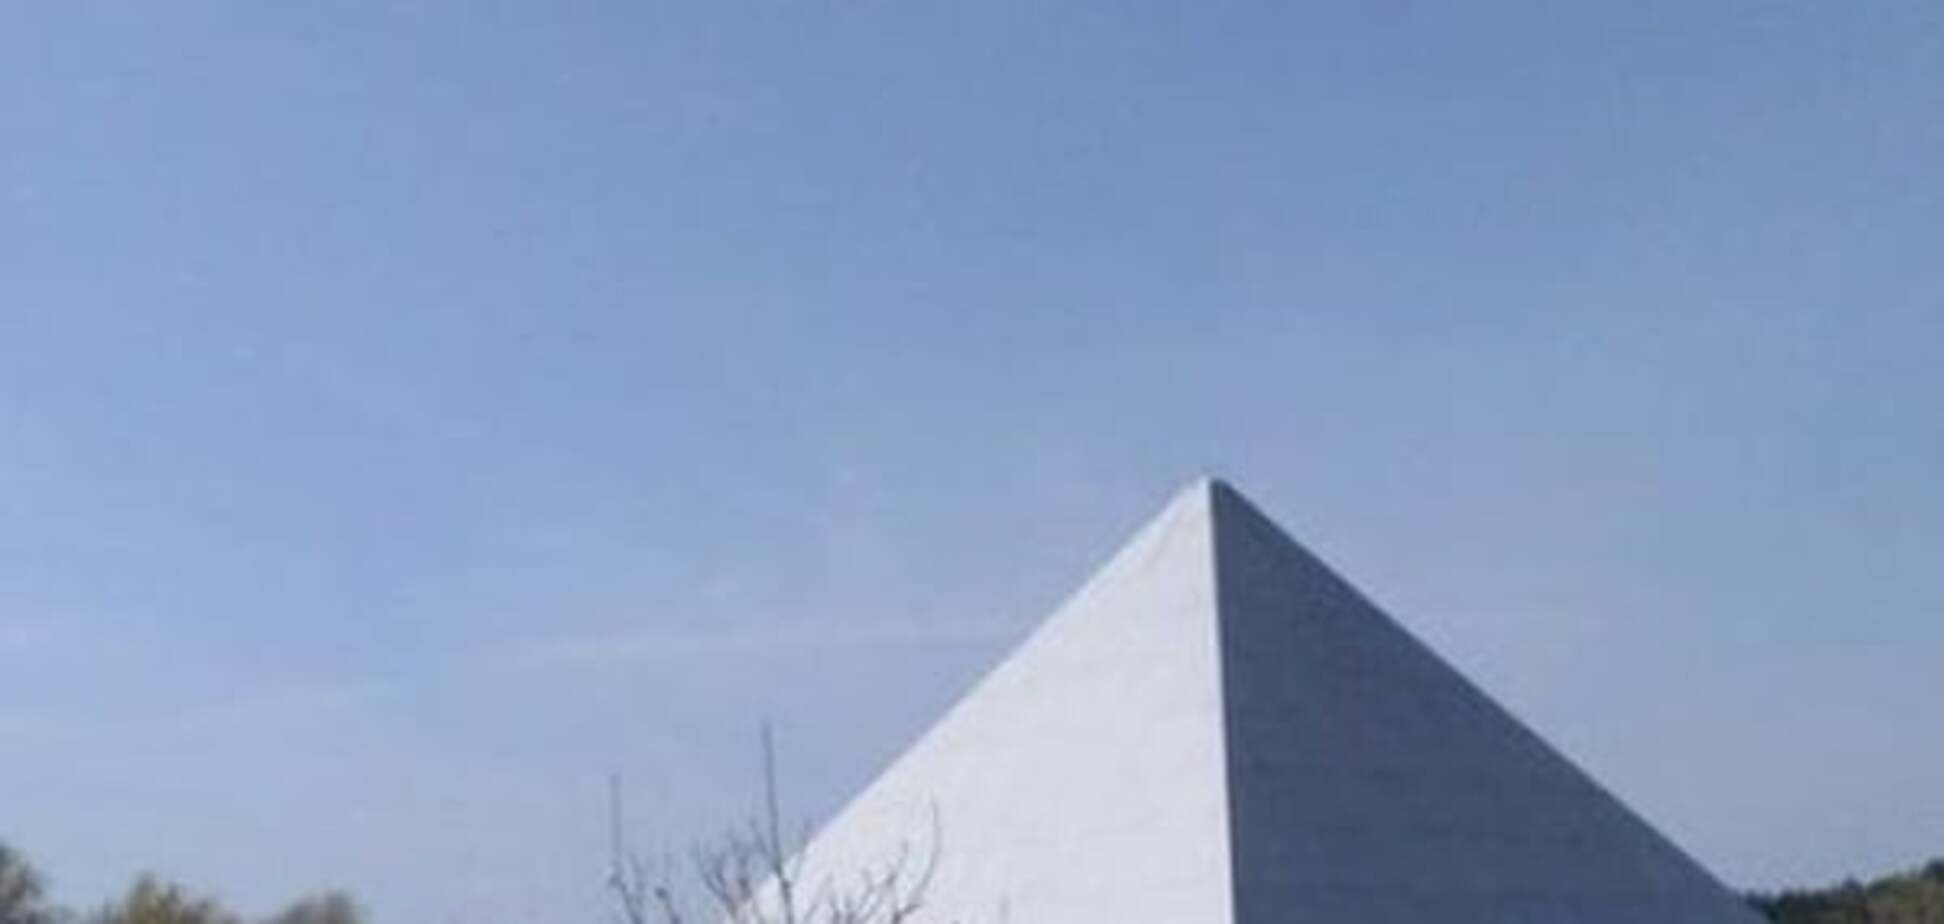 Піраміда Хеопса на Полтавщині: активісти побудували прототип єгипетської усипальниці. Фото